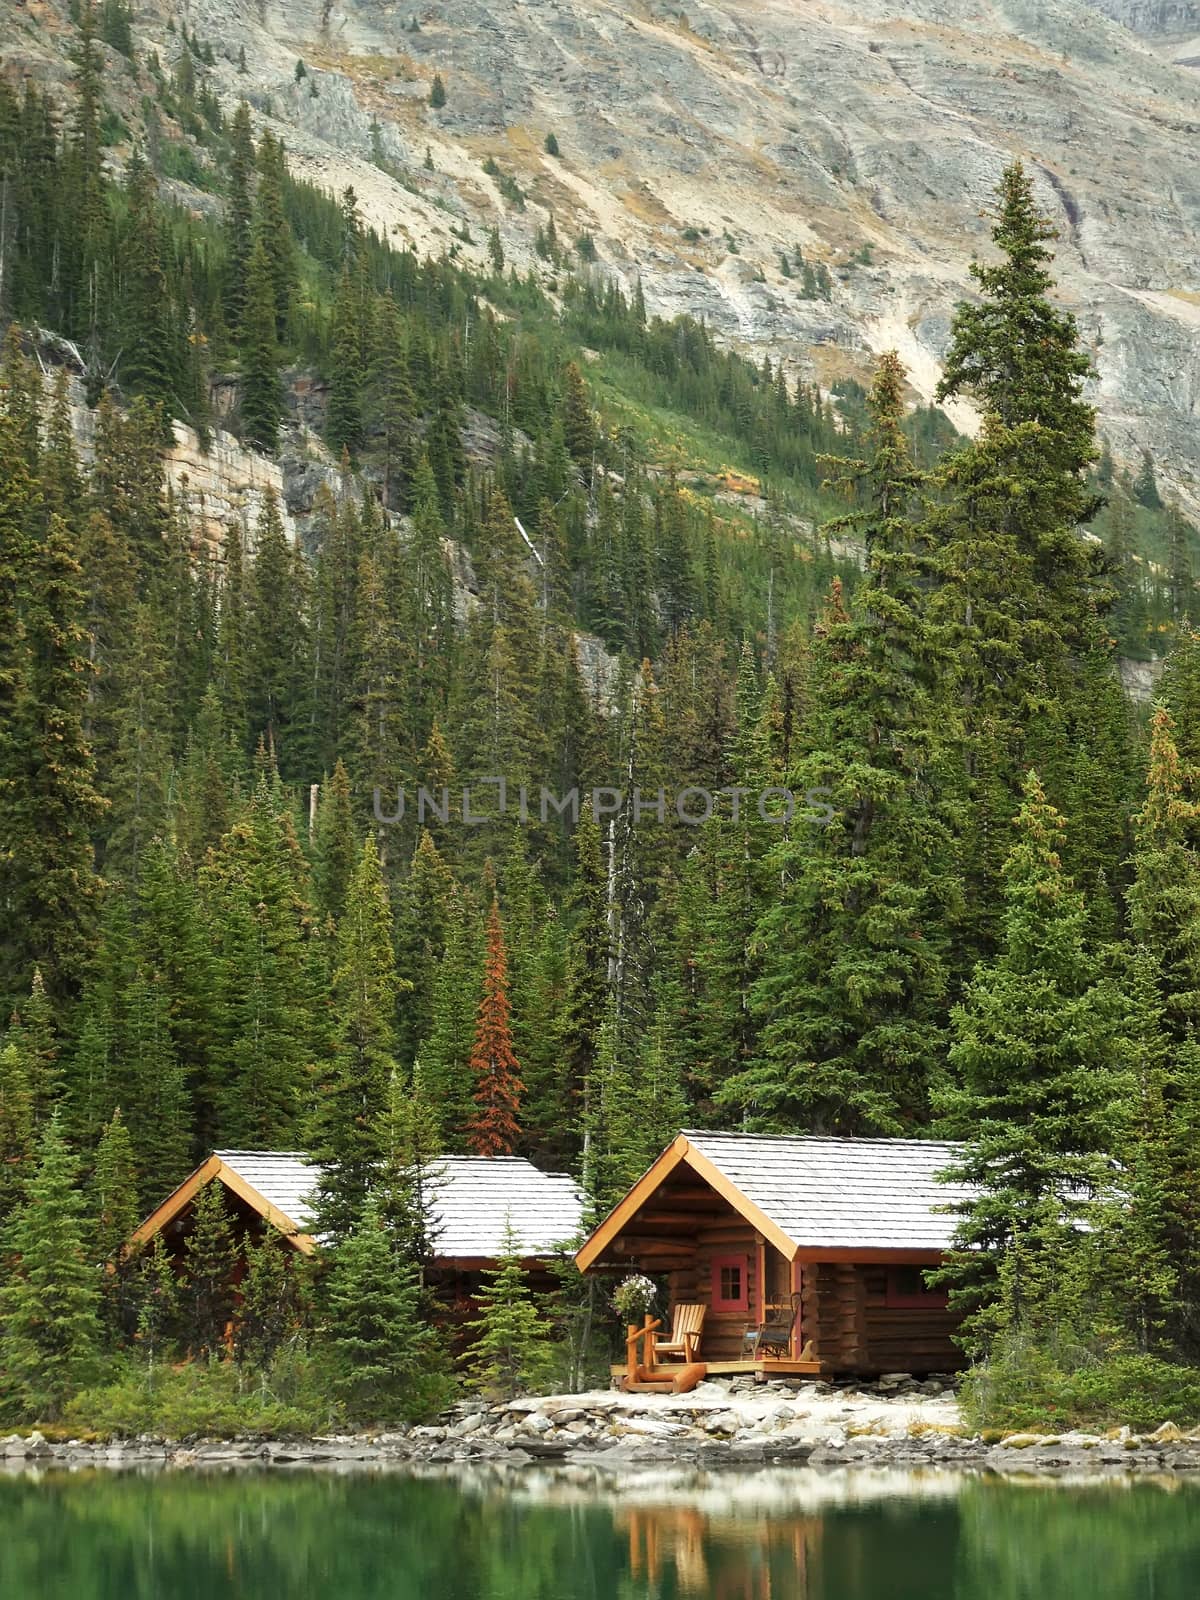 Wooden cabins at Lake O'Hara, Yoho National Park, British Columbia, Canada